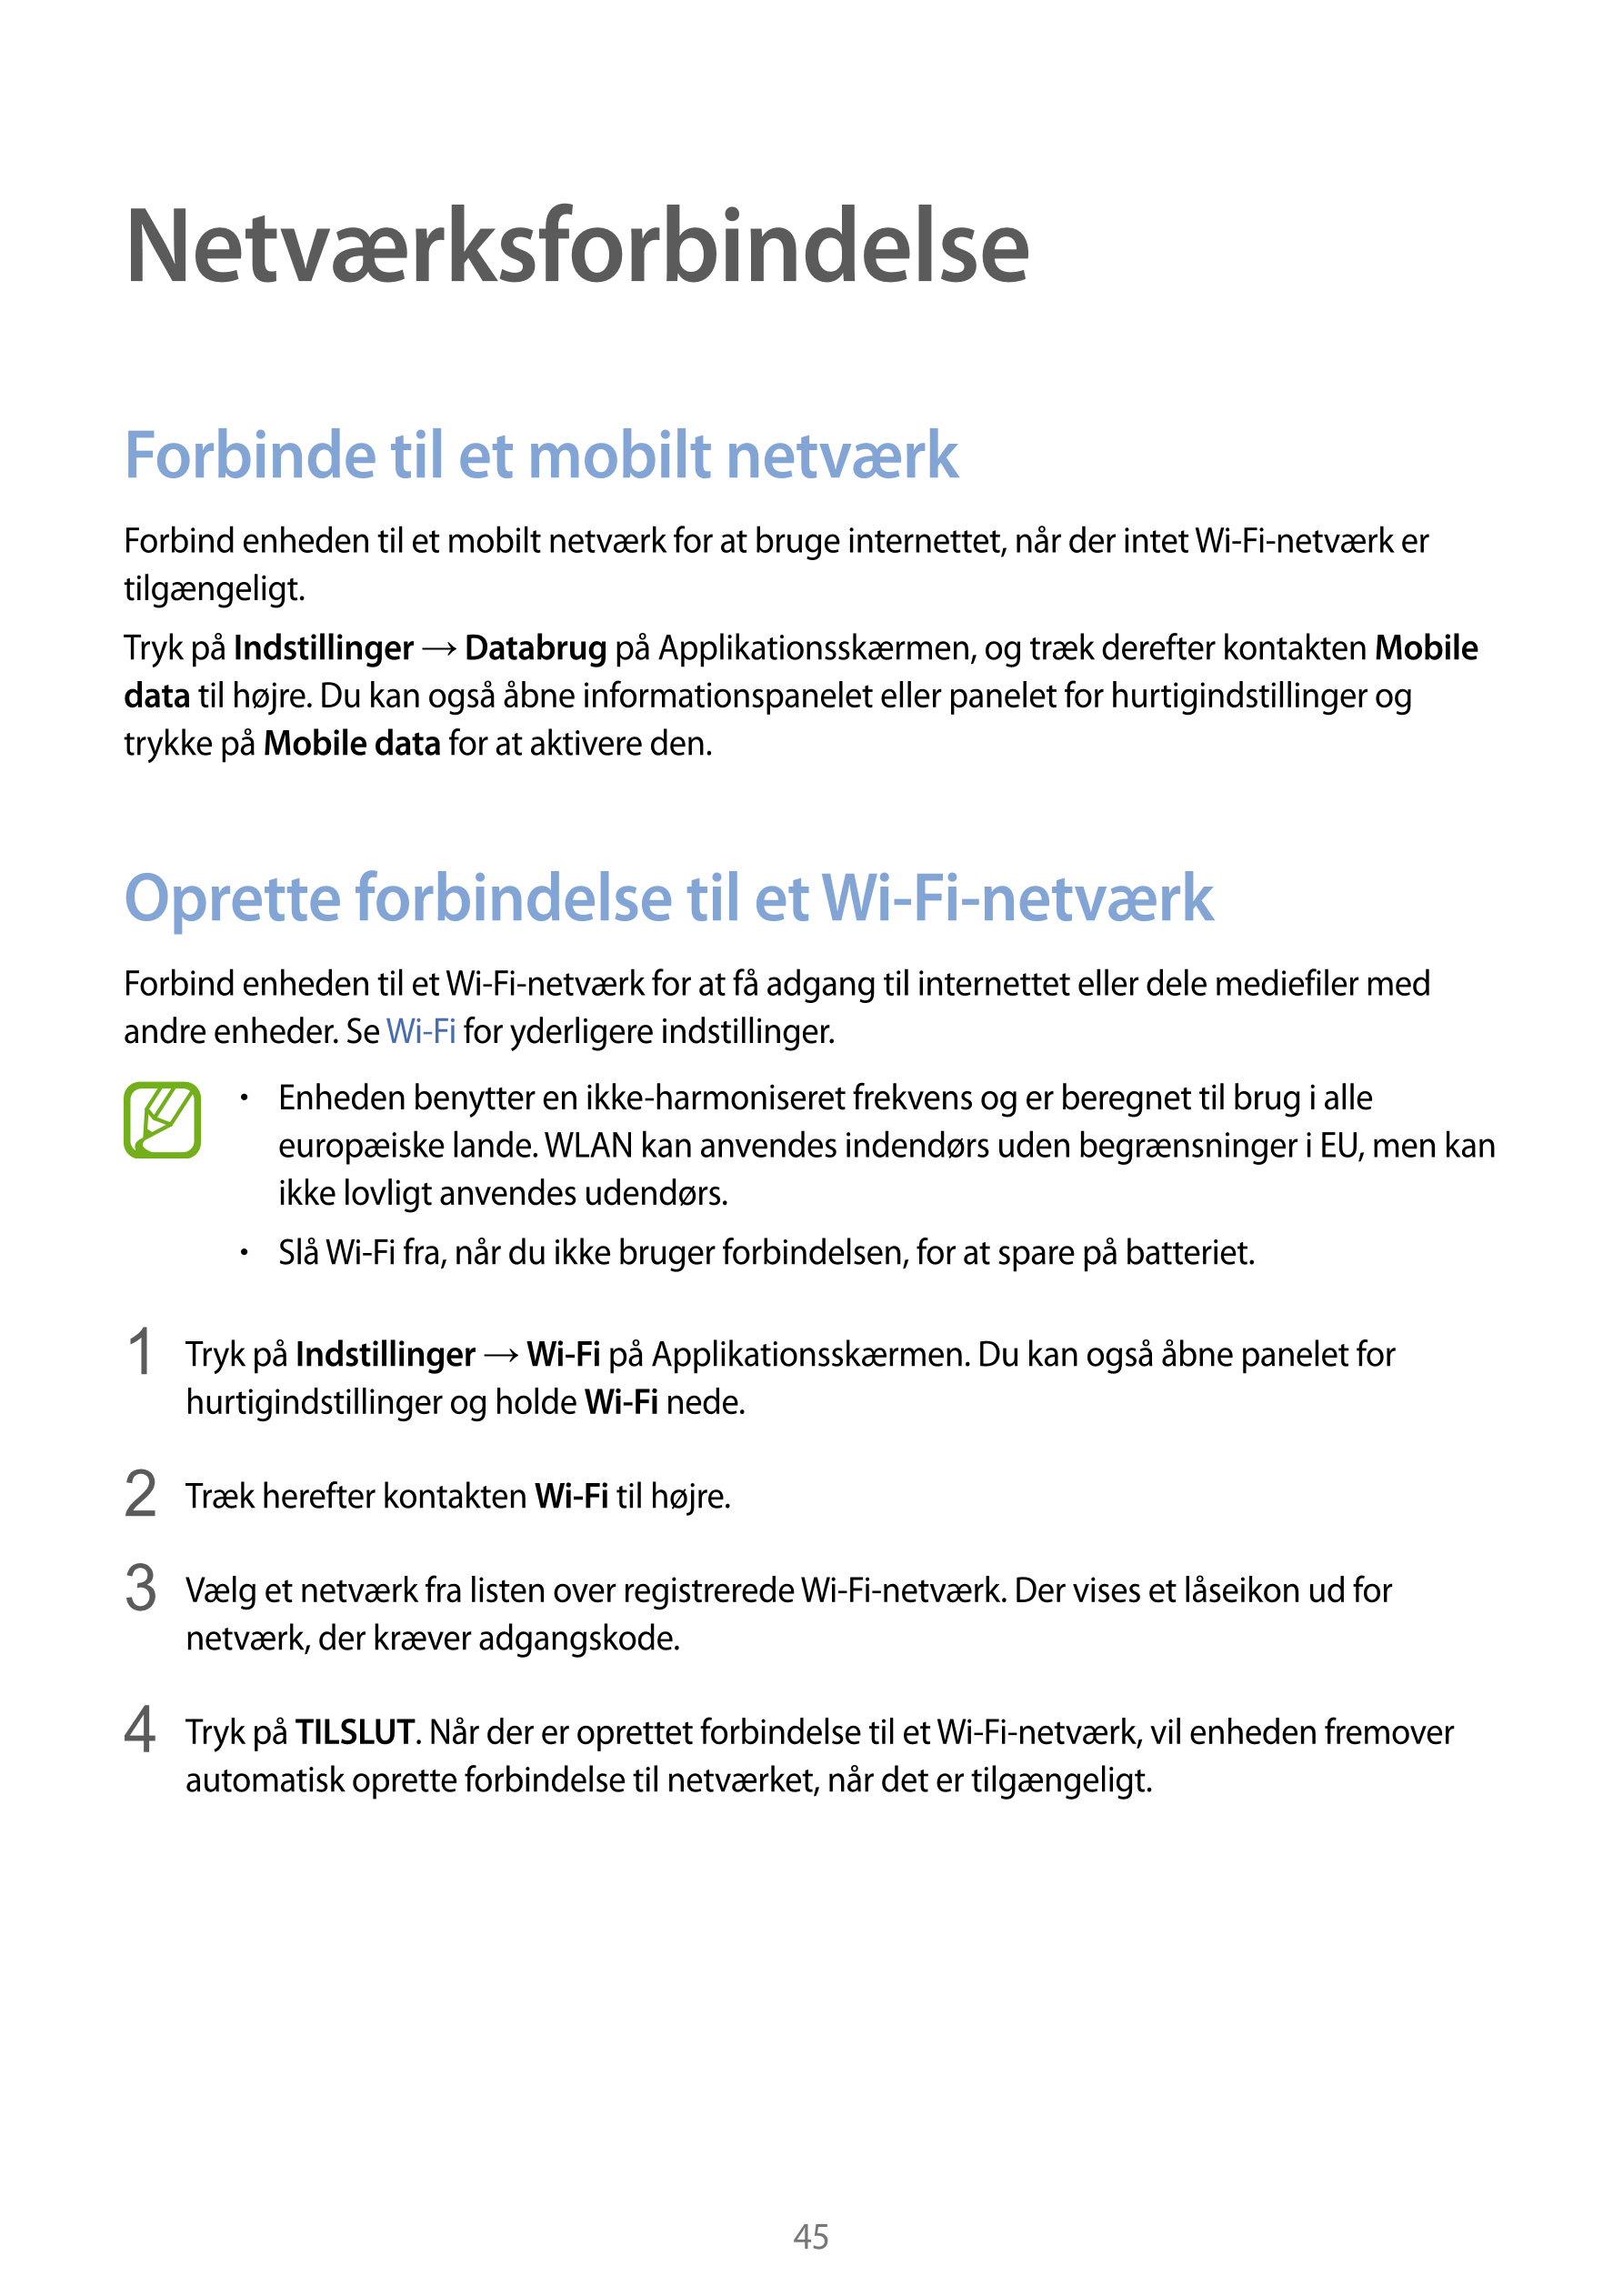 Netværksforbindelse
Forbinde til et mobilt netværk
Forbind enheden til et mobilt netværk for at bruge internettet, når der intet